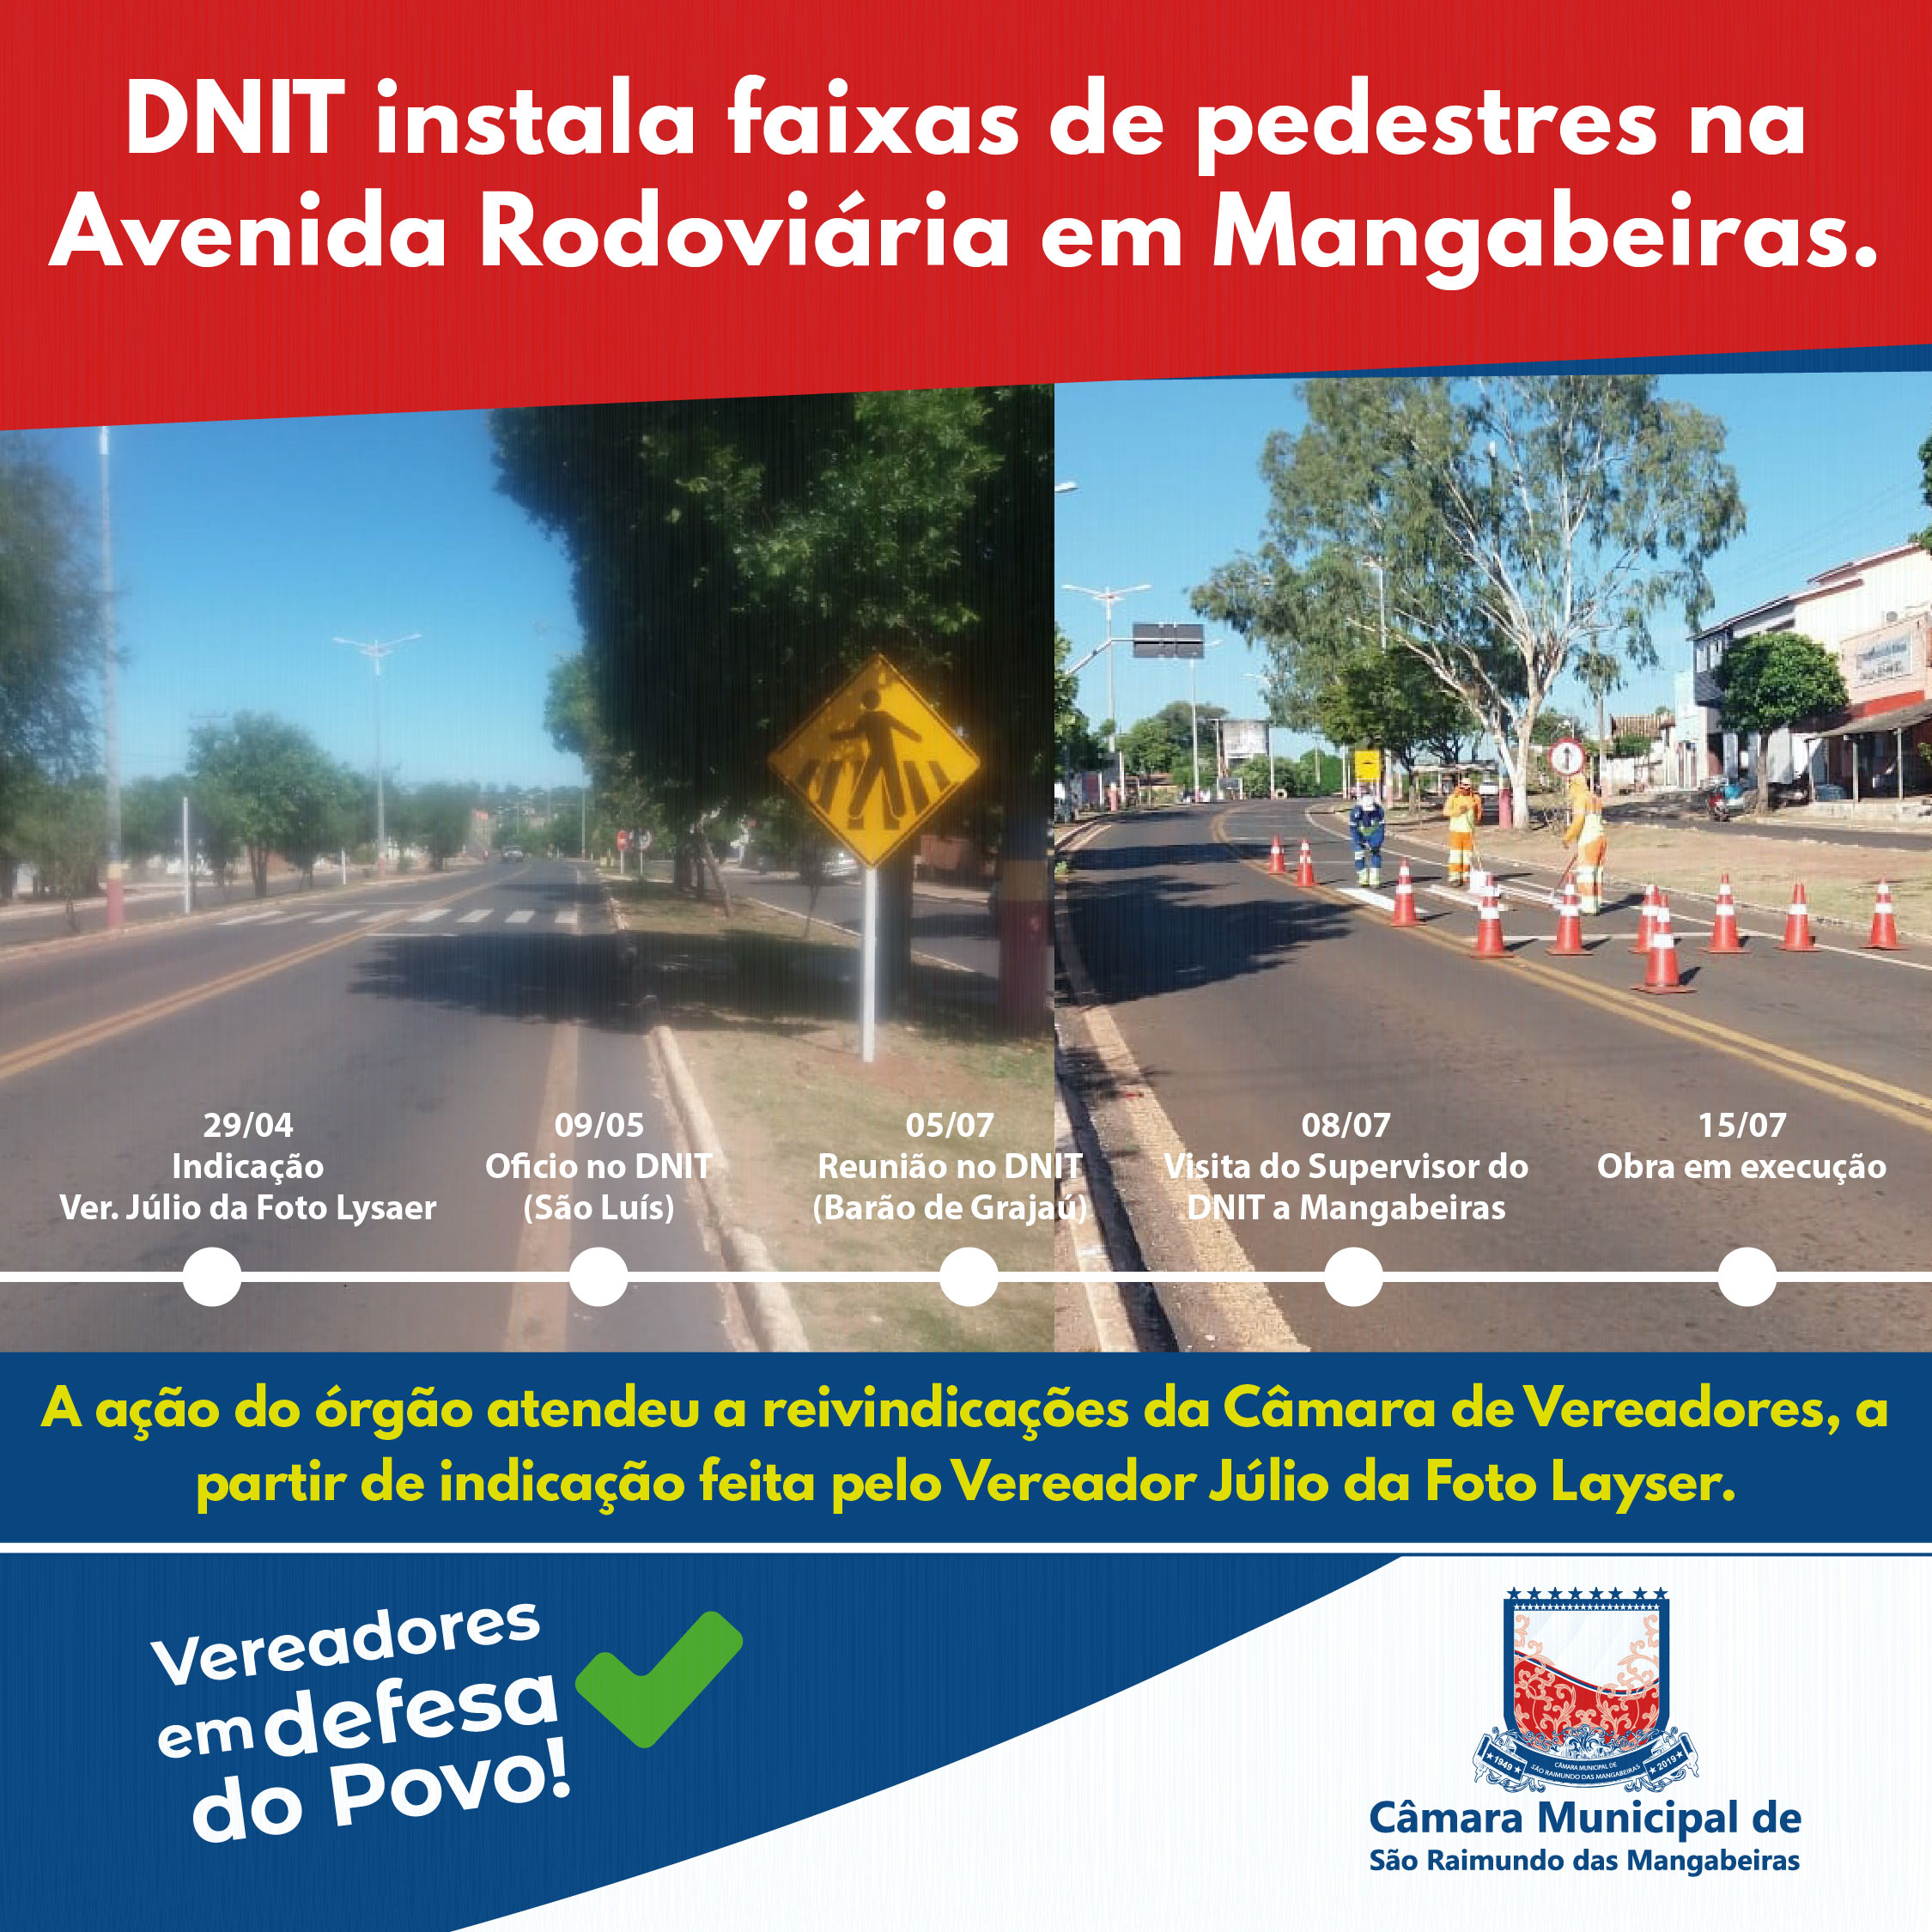 DNIT instala faixas de pedestres na Avenida Rodoviária em Mangabeiras; Ação atendeu a pedidos de vereadores